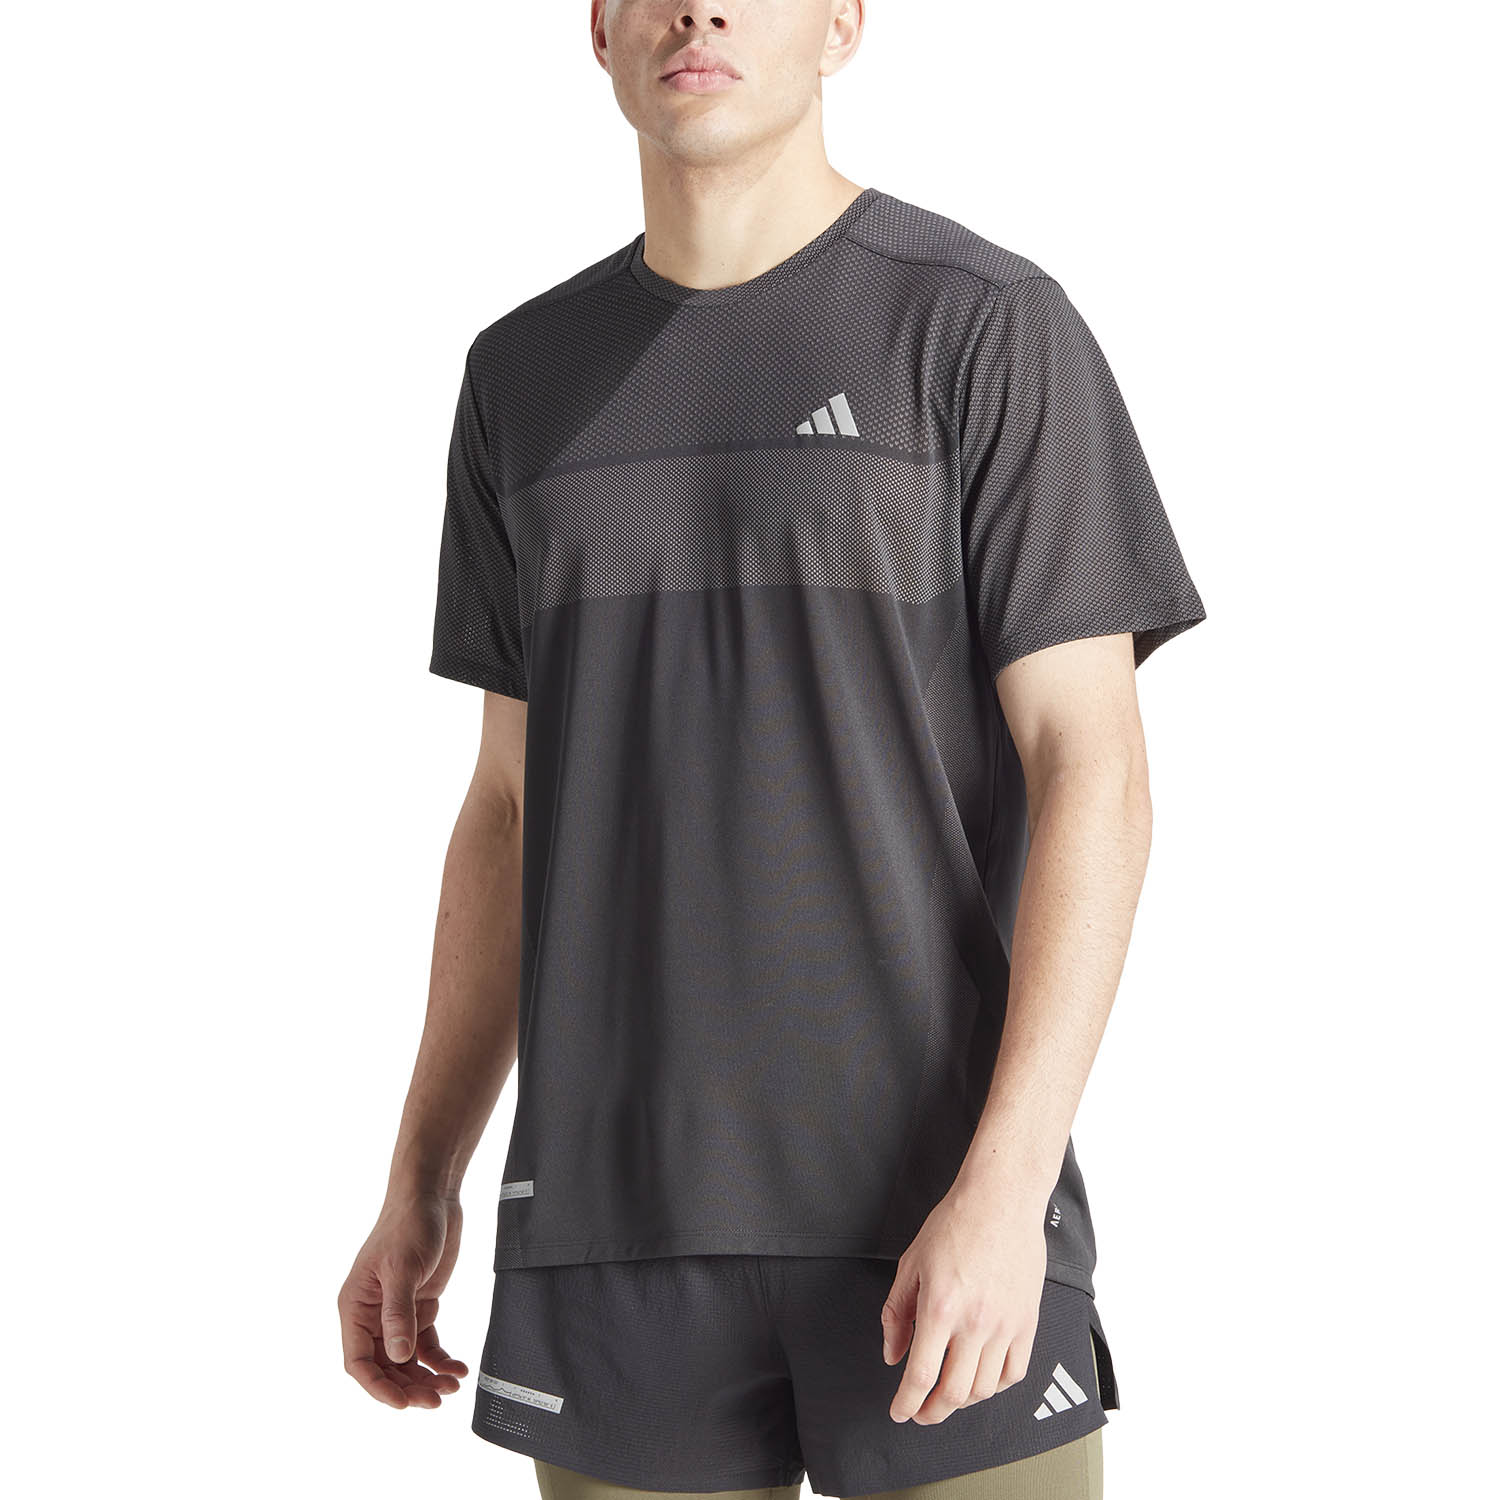 adidas Ultimate Enginereed Camiseta - Black/Grey Four